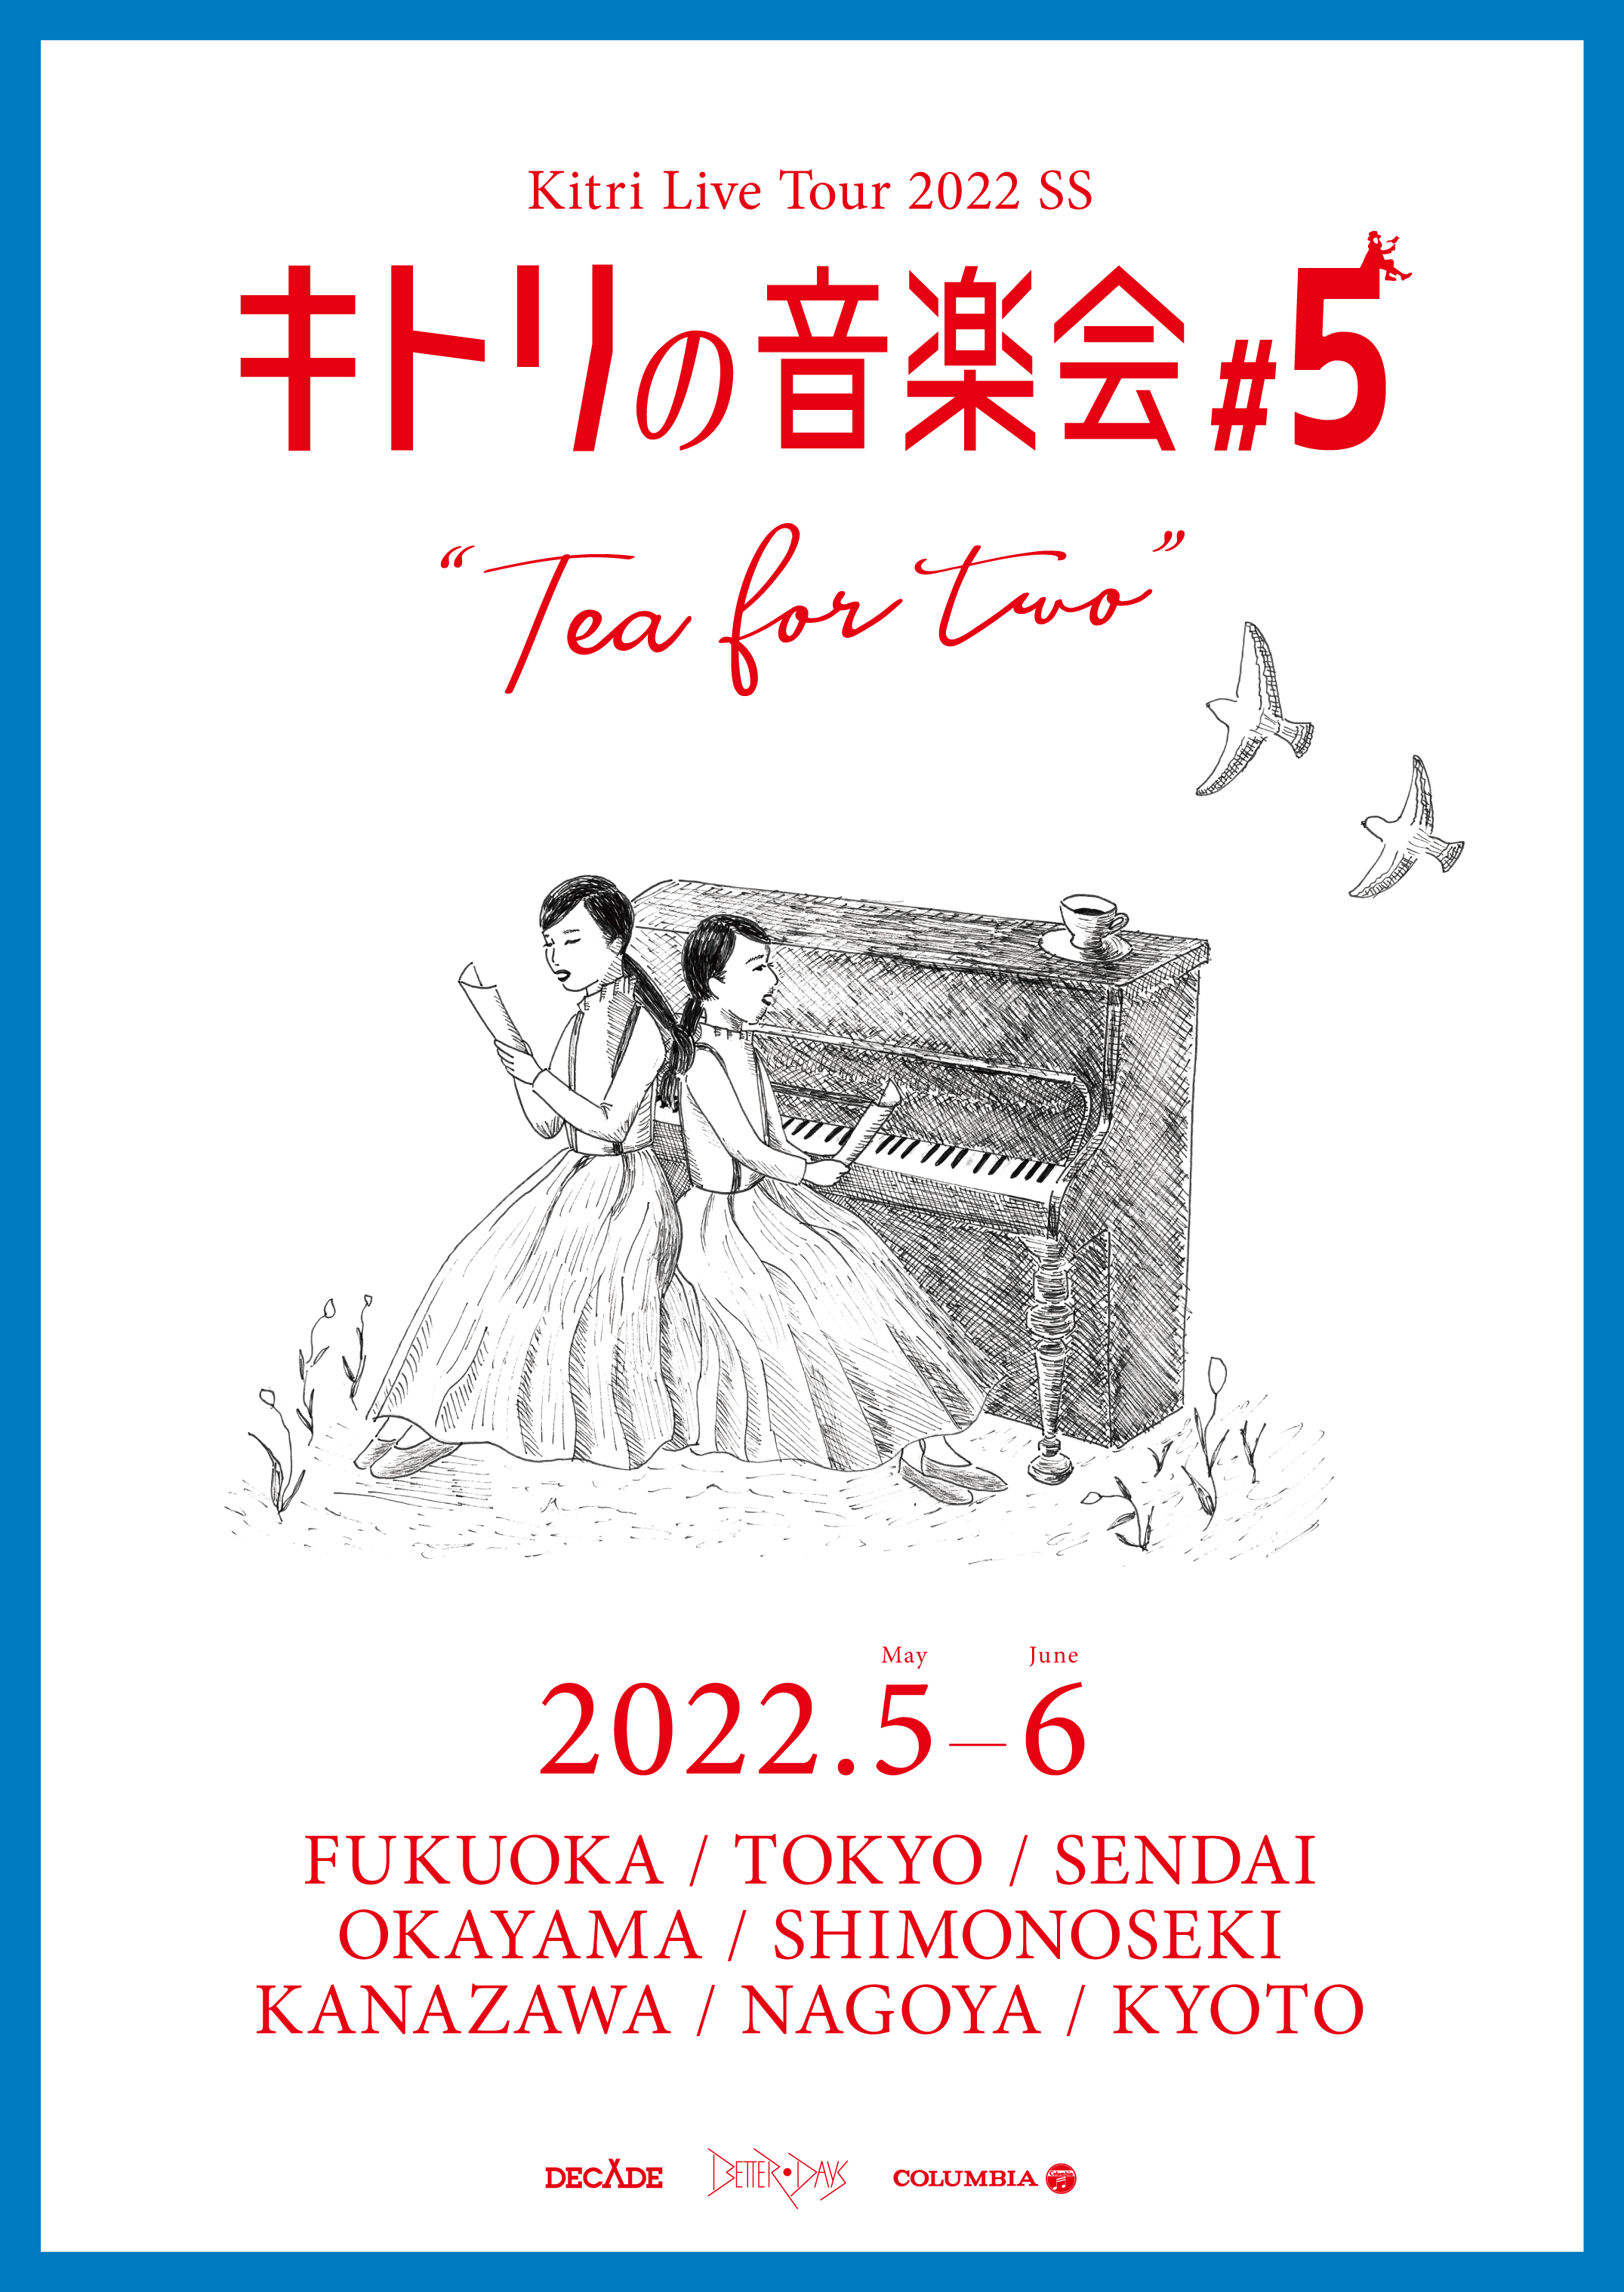 Kitri Live Tour 2022 SS 「 キトリの音楽会 #5 」福岡公演